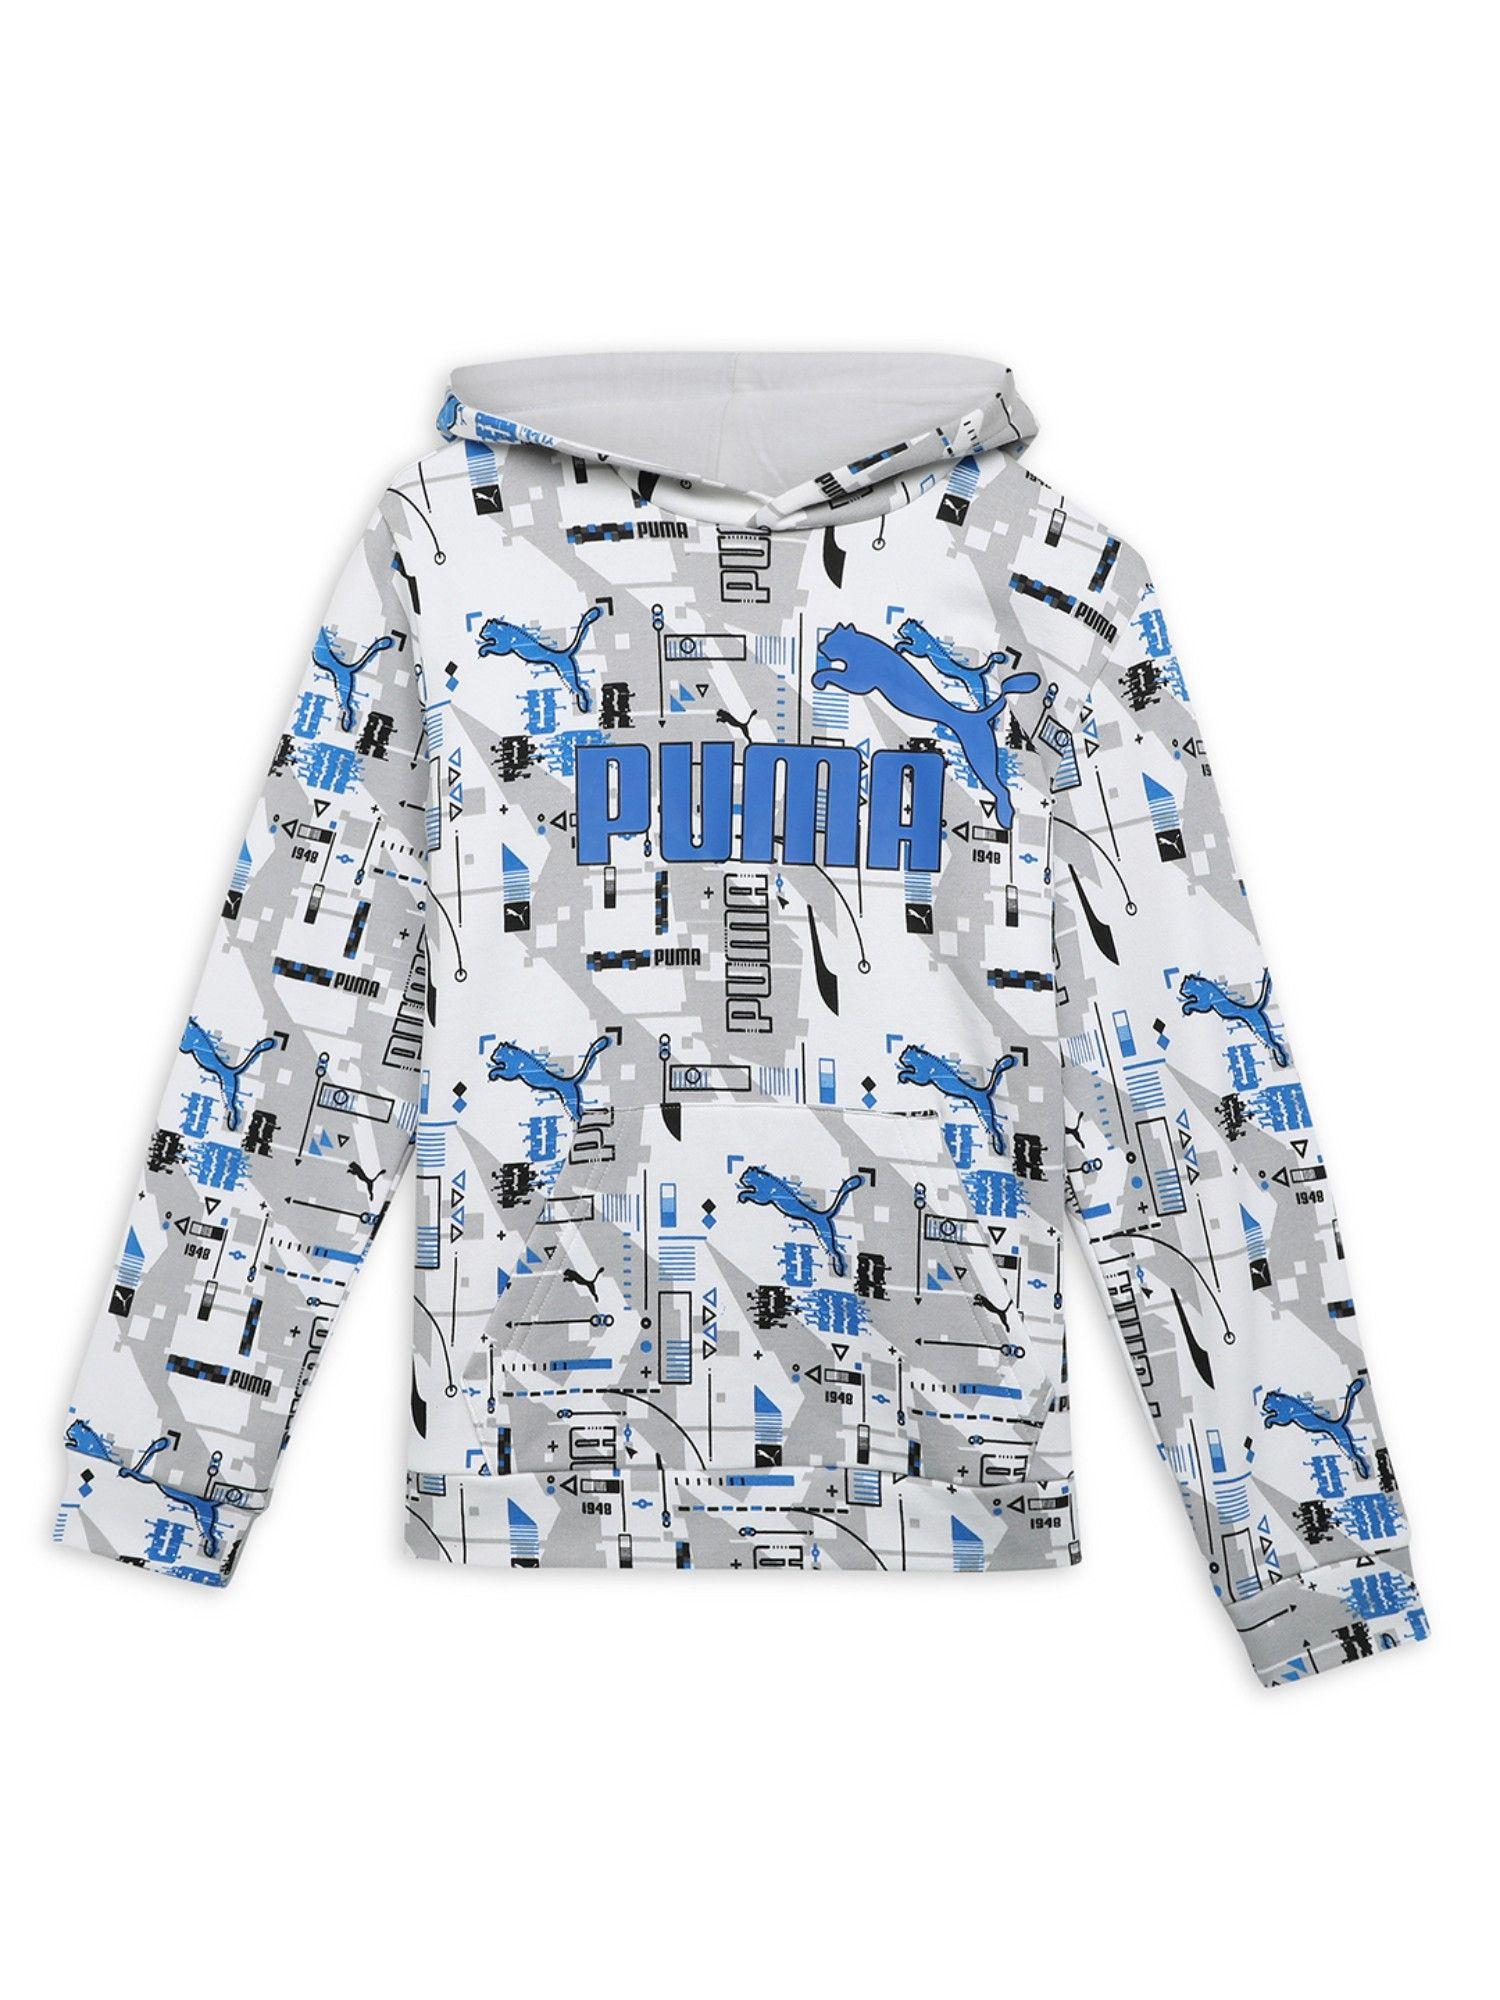 essentials-futureverse-boys-multi-color-hoodies